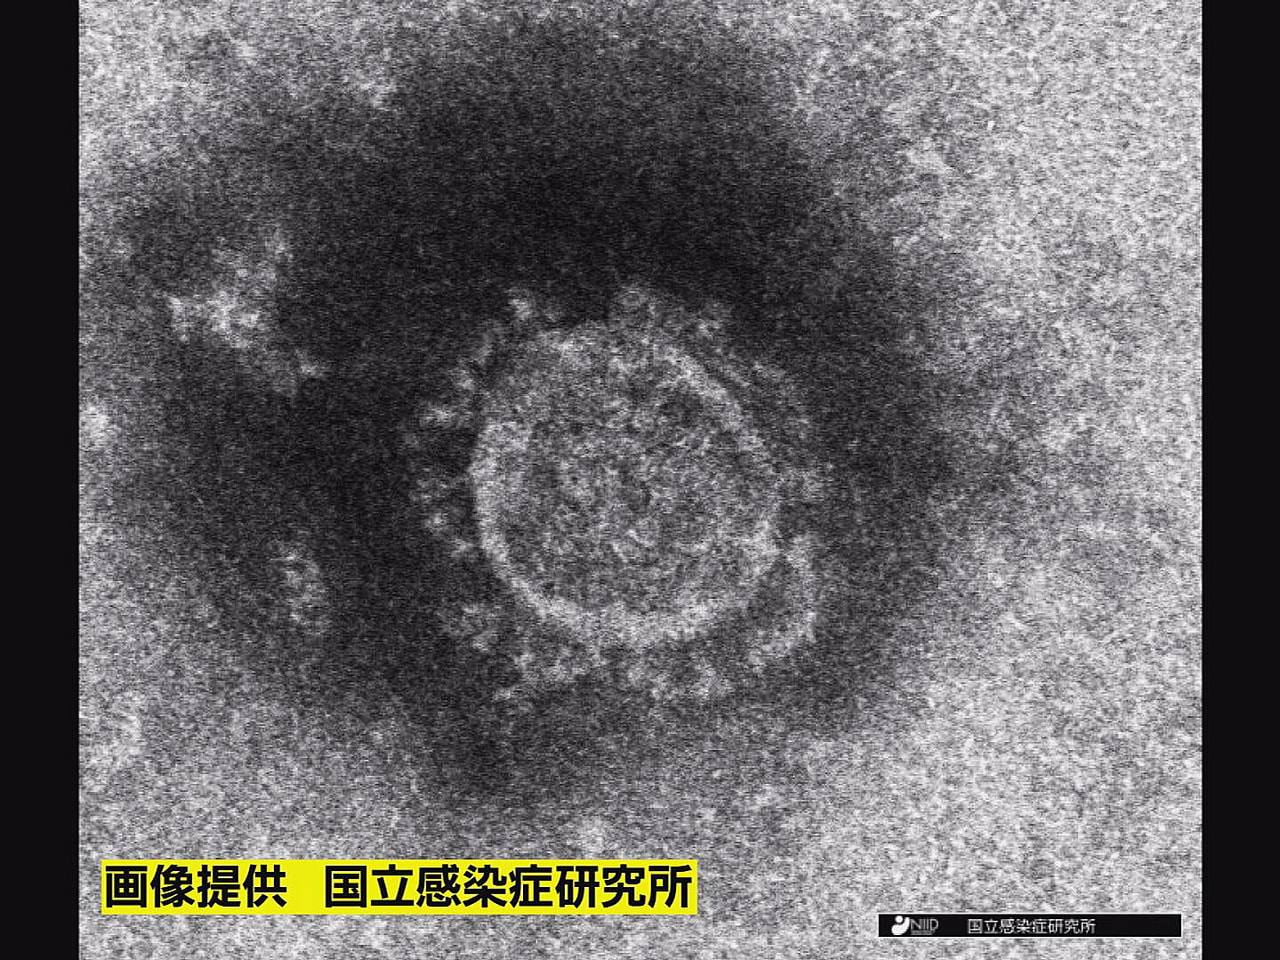 岐阜県は、２９日、新型コロナウイルスの感染が新たに１人確認されたと発表しました。...